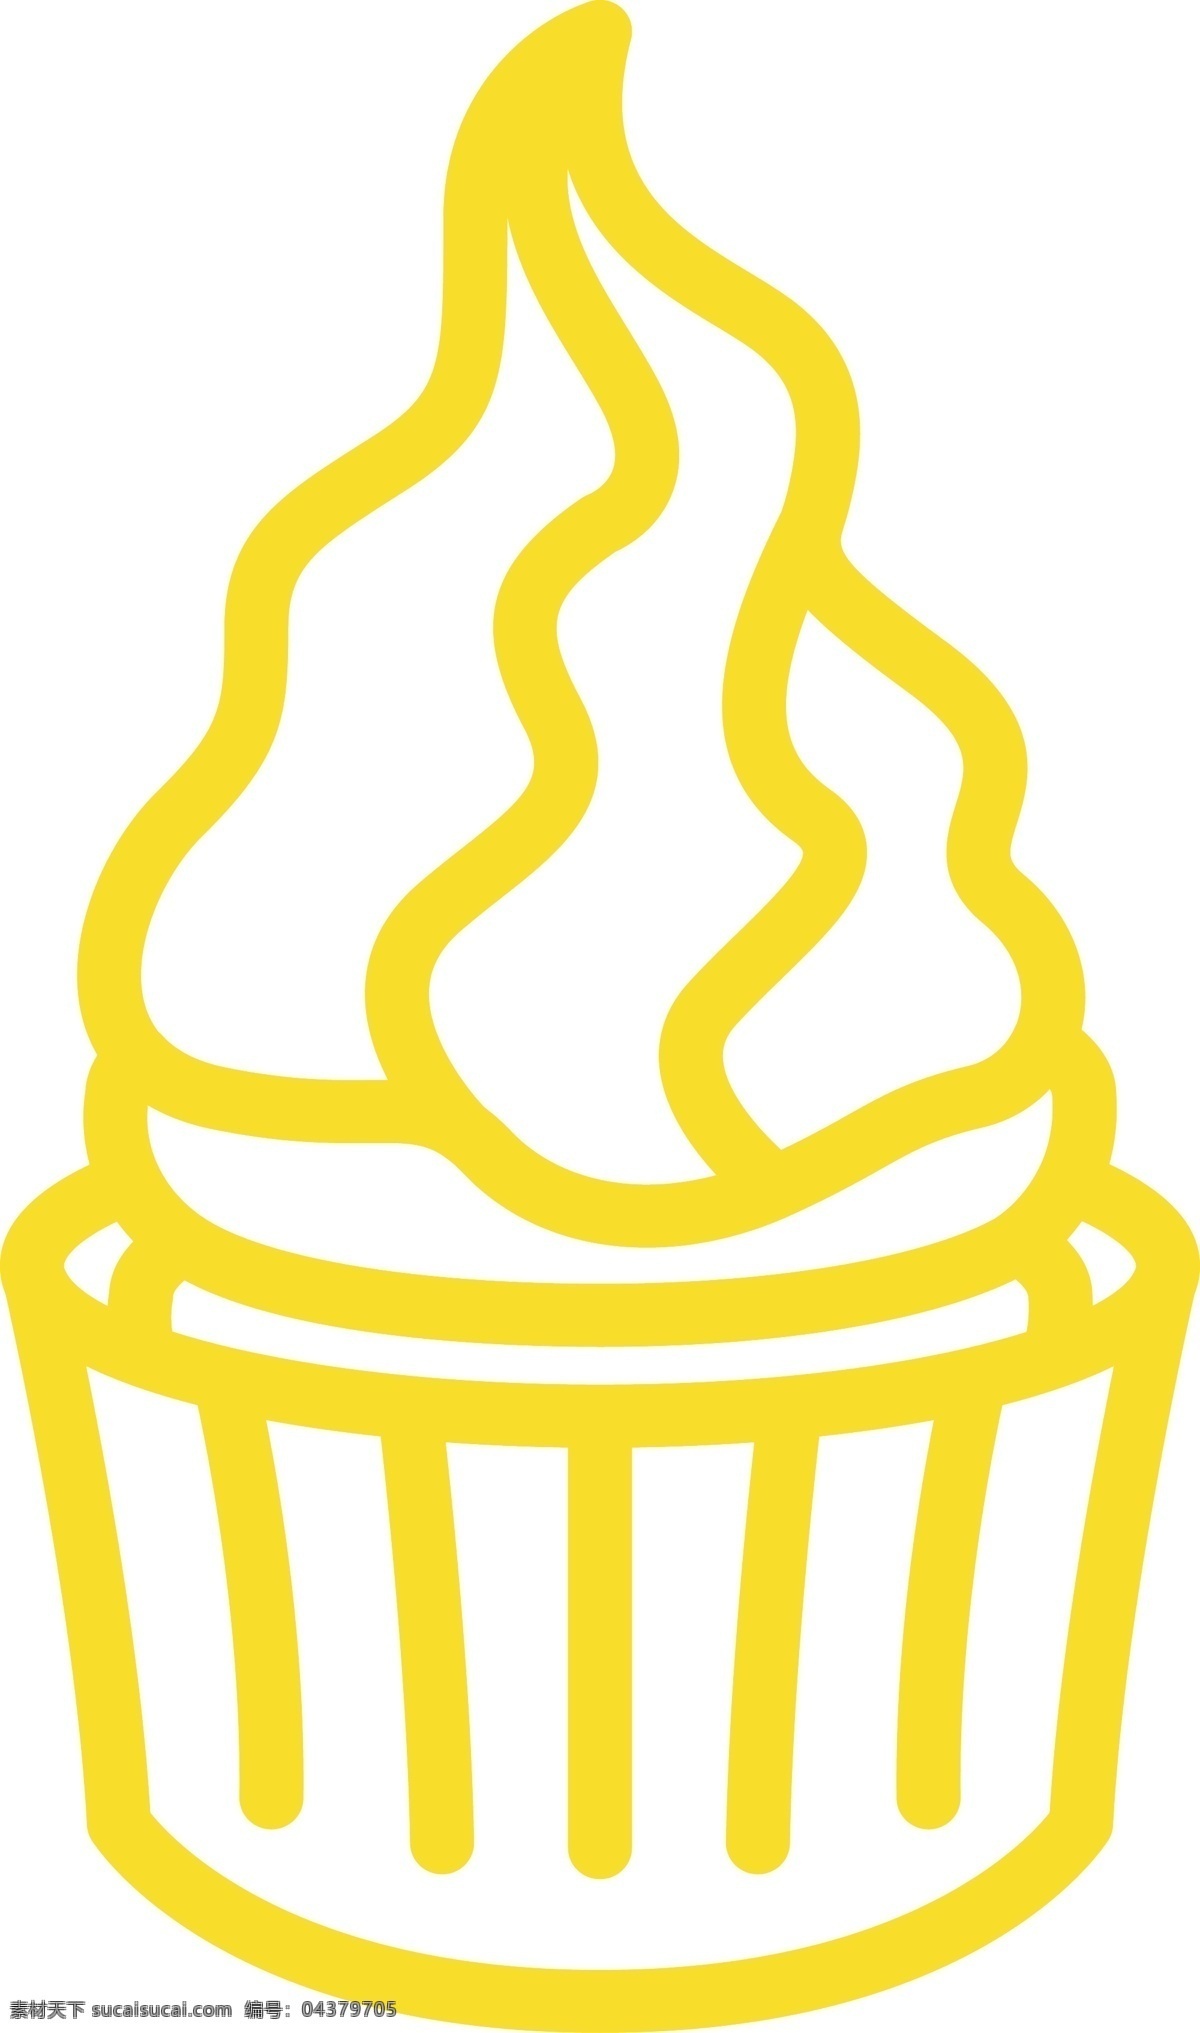 卡通 黄色 杯 装 冰淇淋 图标 按钮图标 网页图标 杯装冰淇淋 ui应用图标